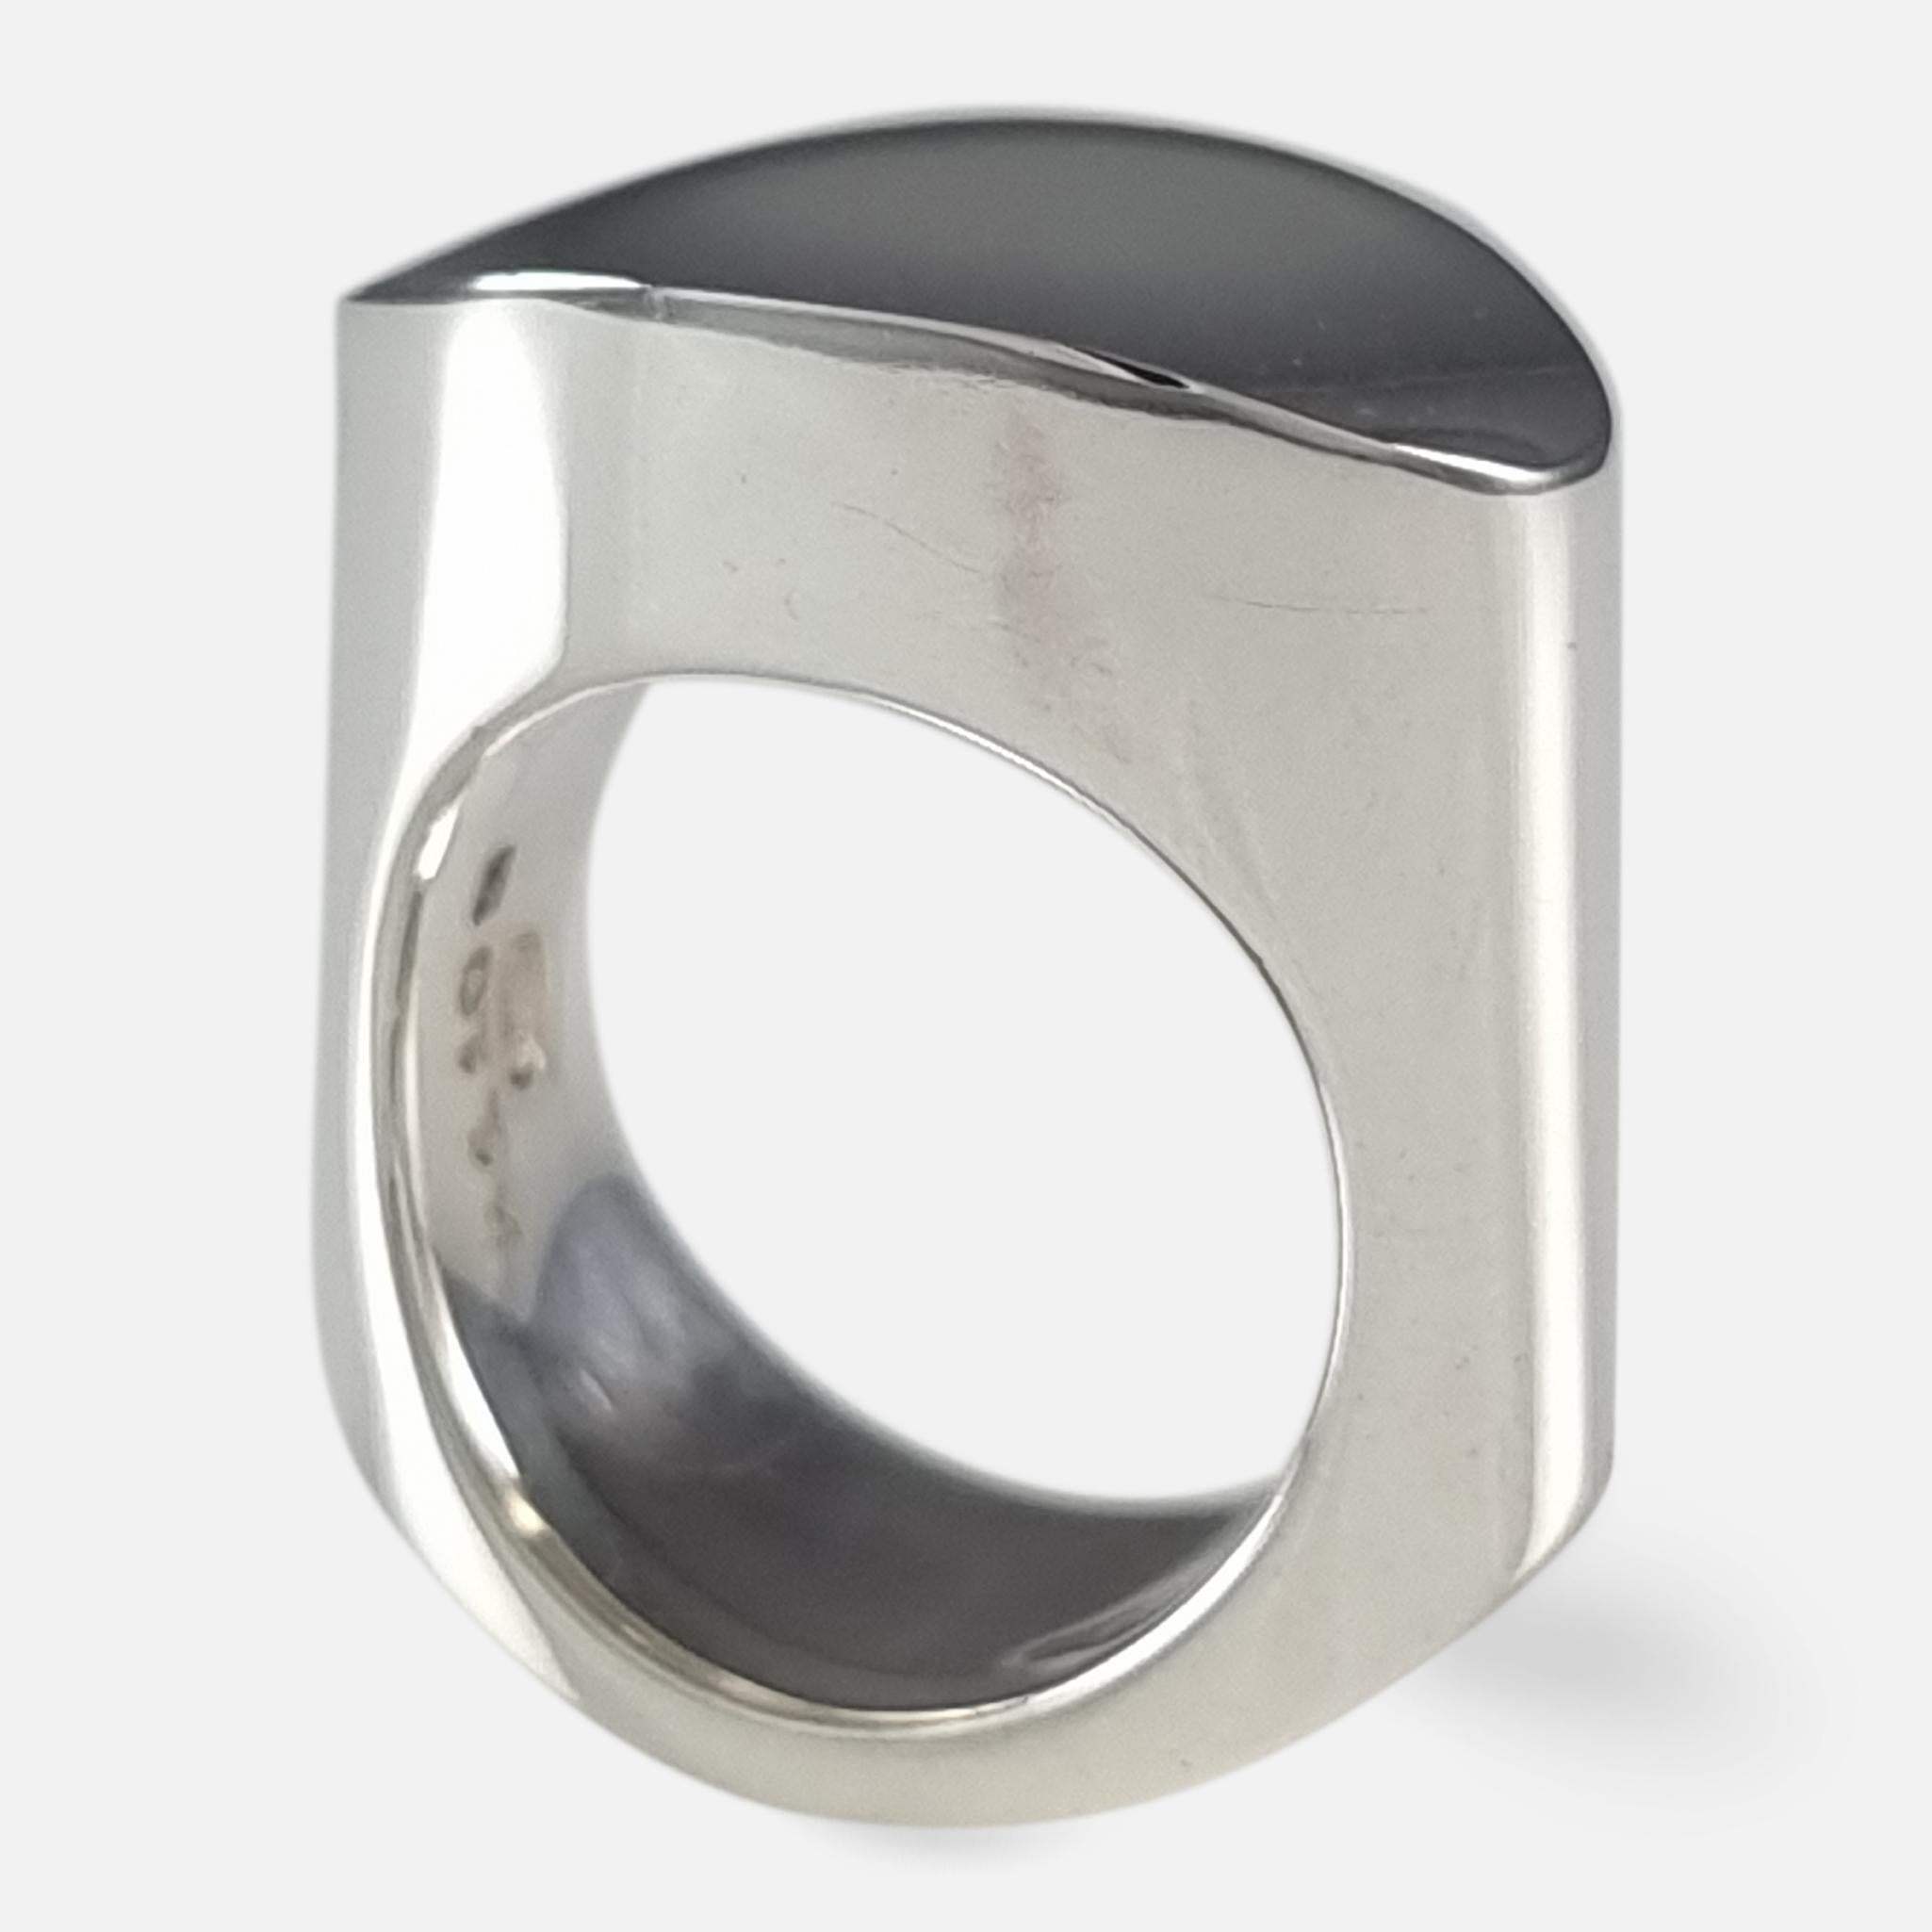 Ein dänischer Ring aus Sterlingsilber, #A110B, entworfen von Andreas Mikkelsen für Georg Jensen.

Gestempelt Georg Jensen innerhalb der gepunkteten ovalen Marke, 